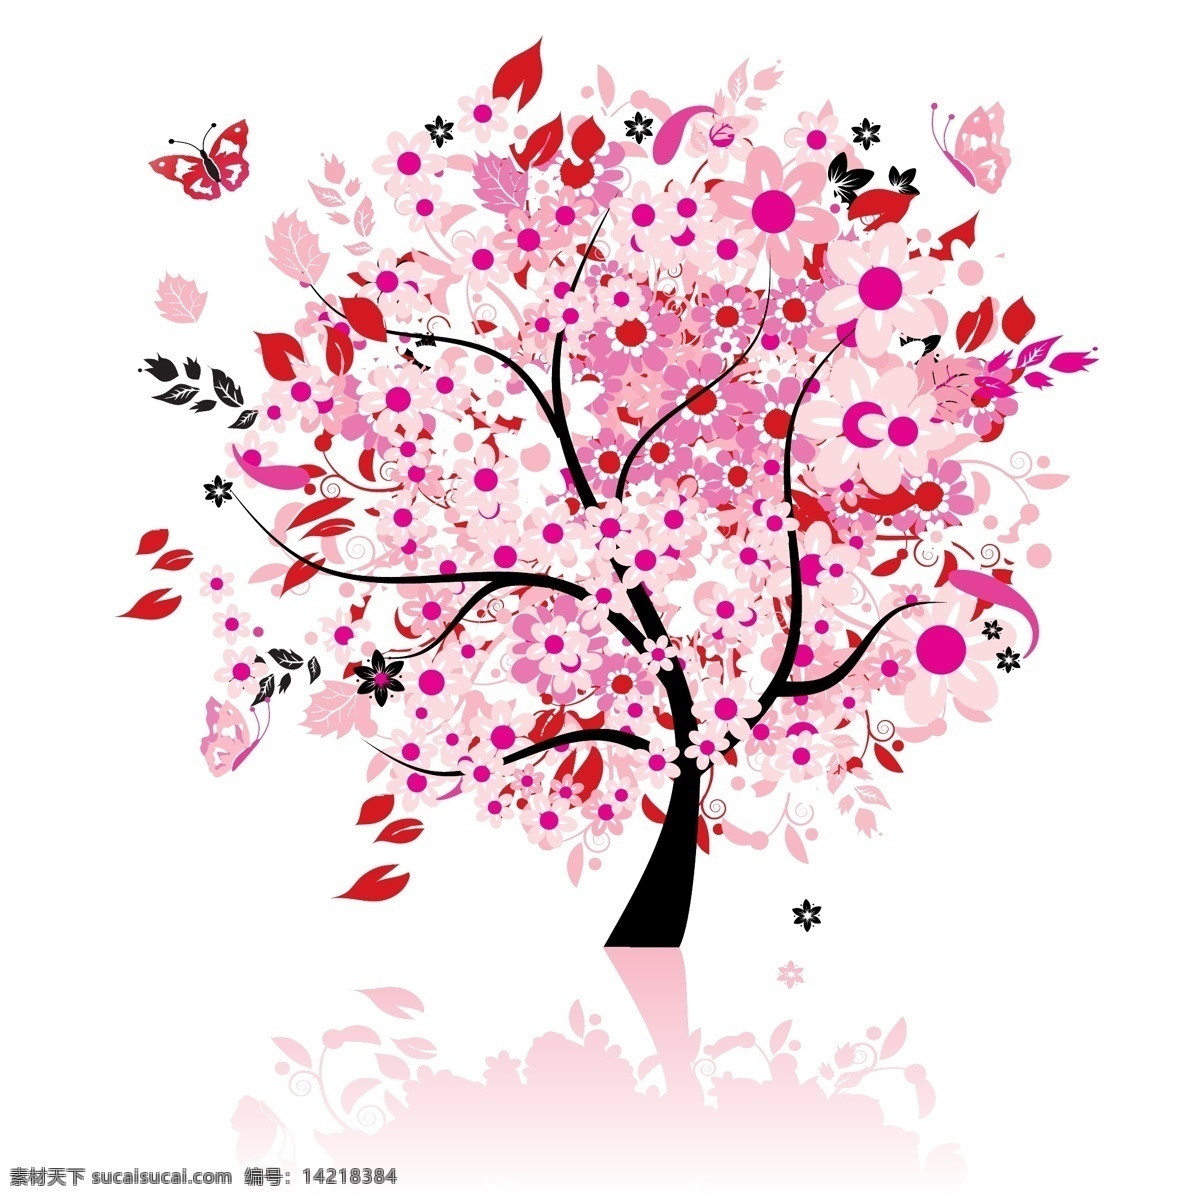 粉红 花树 春天 蝴蝶 花朵 开花 落叶 秋天 矢量素材 树木 小鸟 季节的树 矢量图 花纹花边